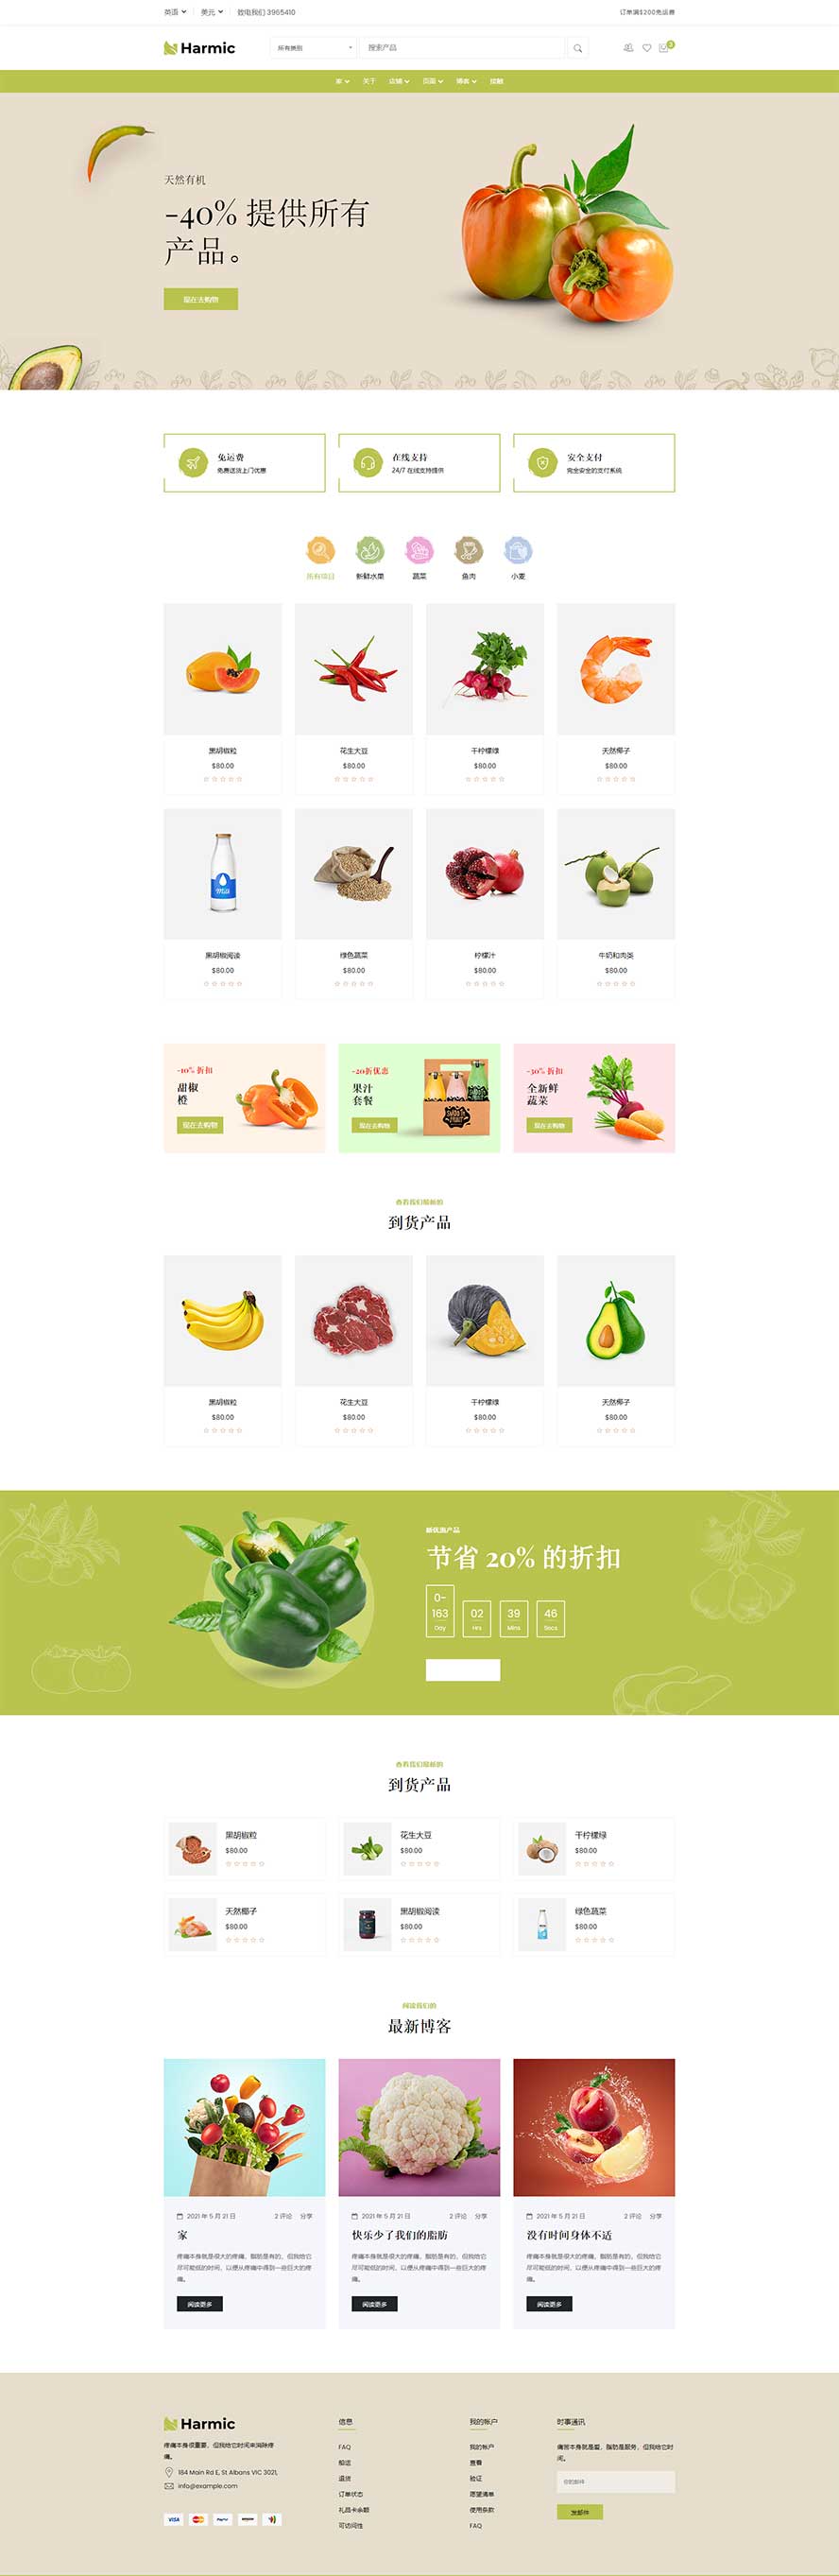 水果网页模板,蔬菜网页模板,生鲜网页模板,电商网页模板